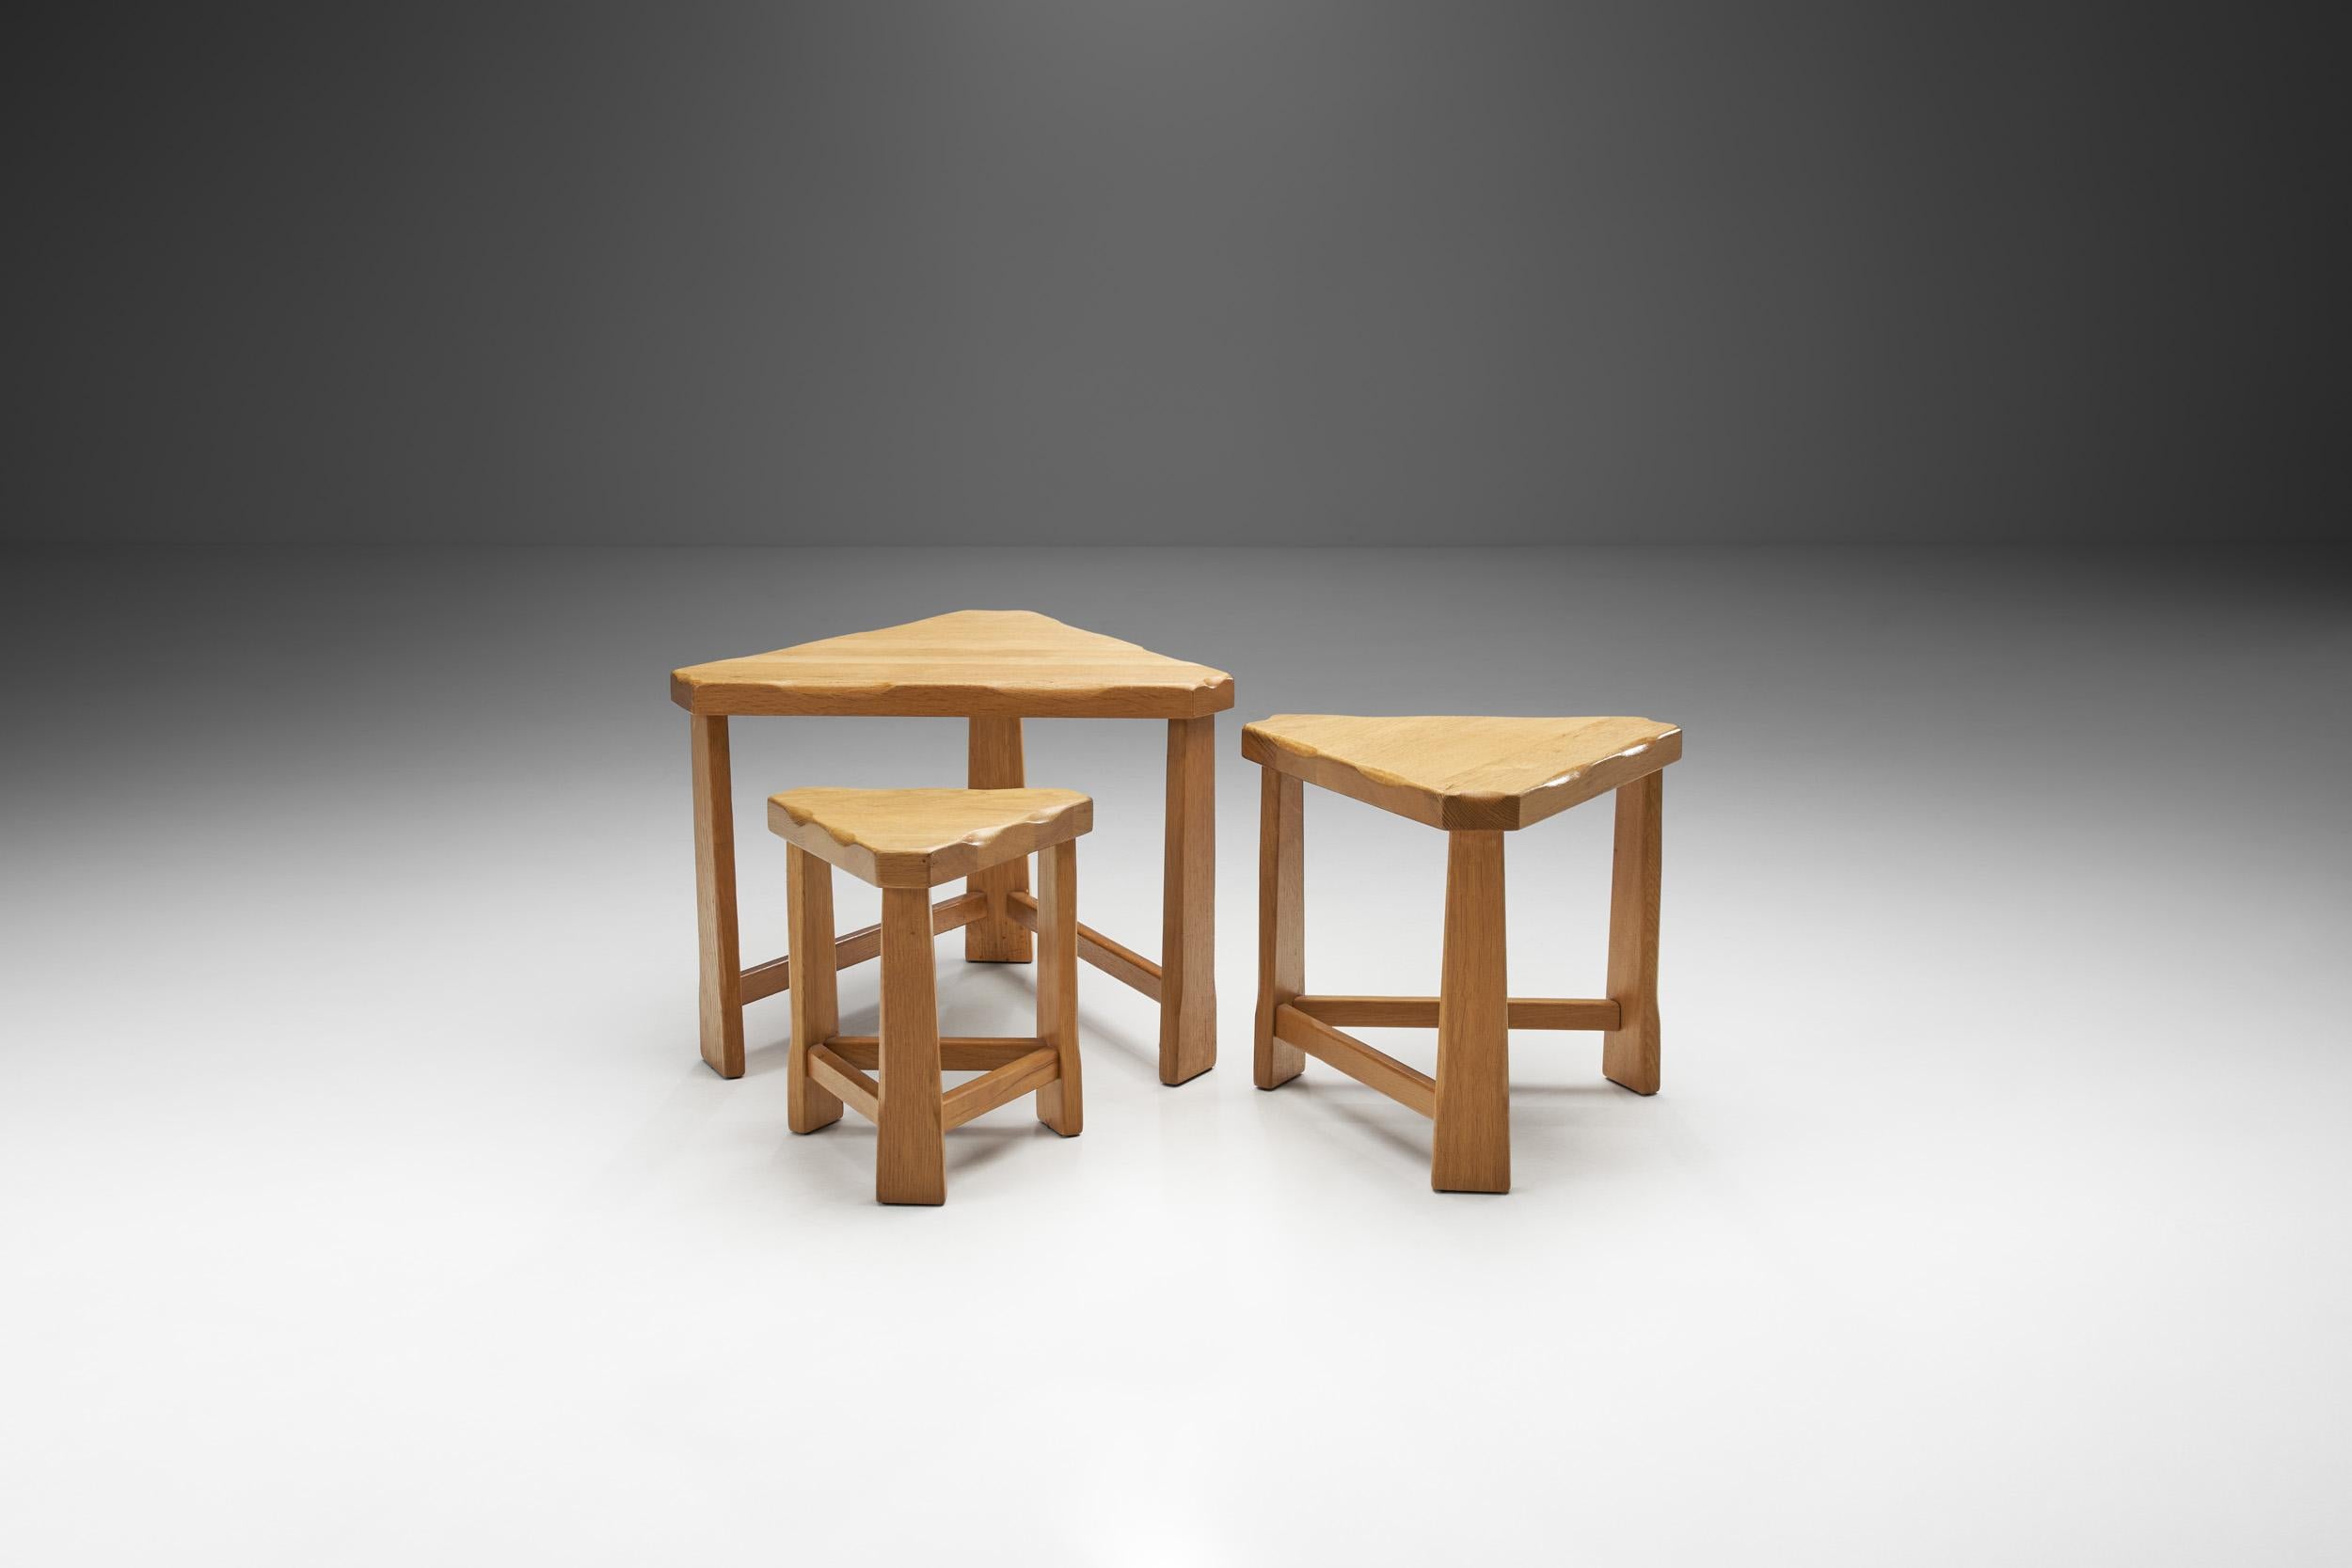 Die mit Blick auf Mobilität und Flexibilität entwickelten Schachteltische lassen sich in einer unbegrenzten Vielfalt von stilvollen und funktionalen Konfigurationen organisieren. Skandinavische Modelle der Jahrhundertmitte - wie diese Tische -